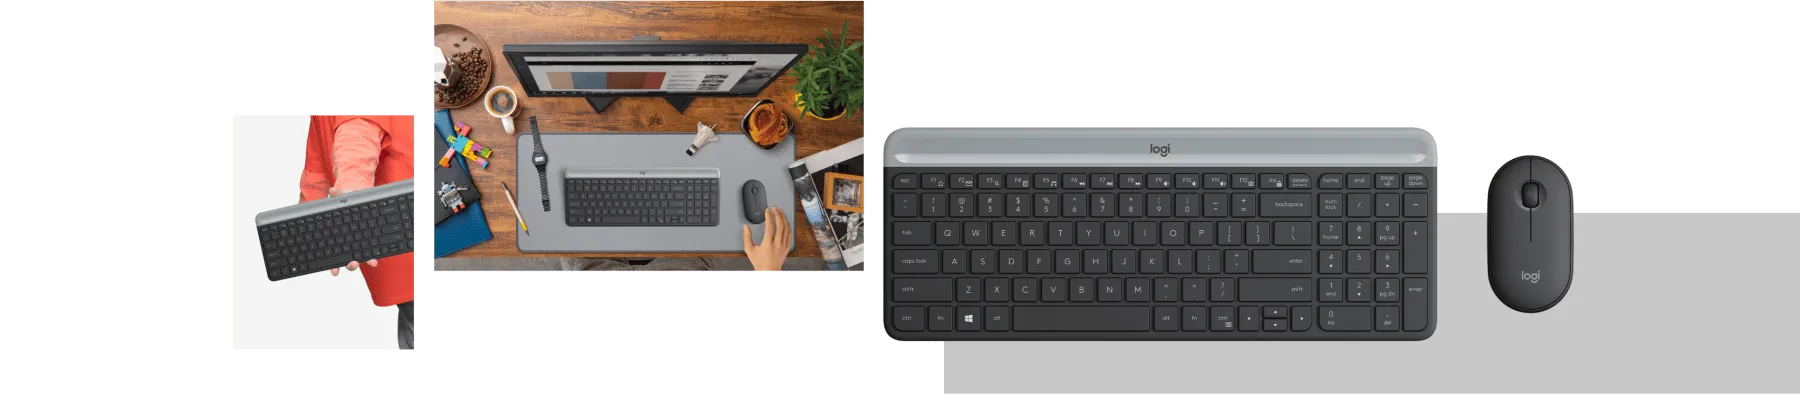 logitech mouse and keyboard wireless